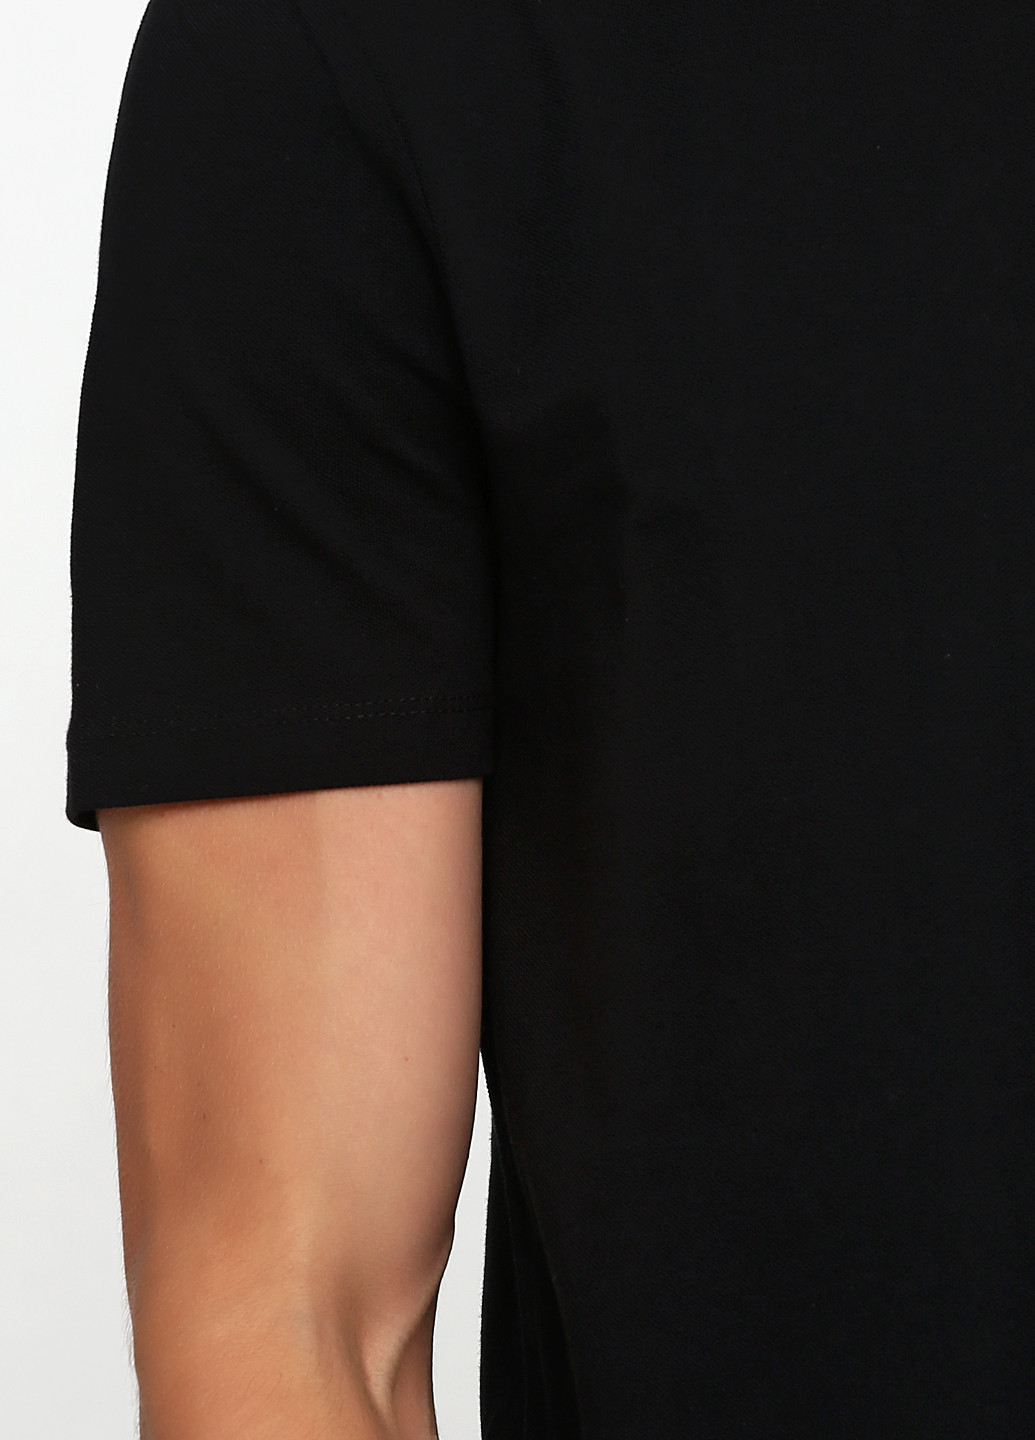 Черная футболка-поло для мужчин Asos однотонная